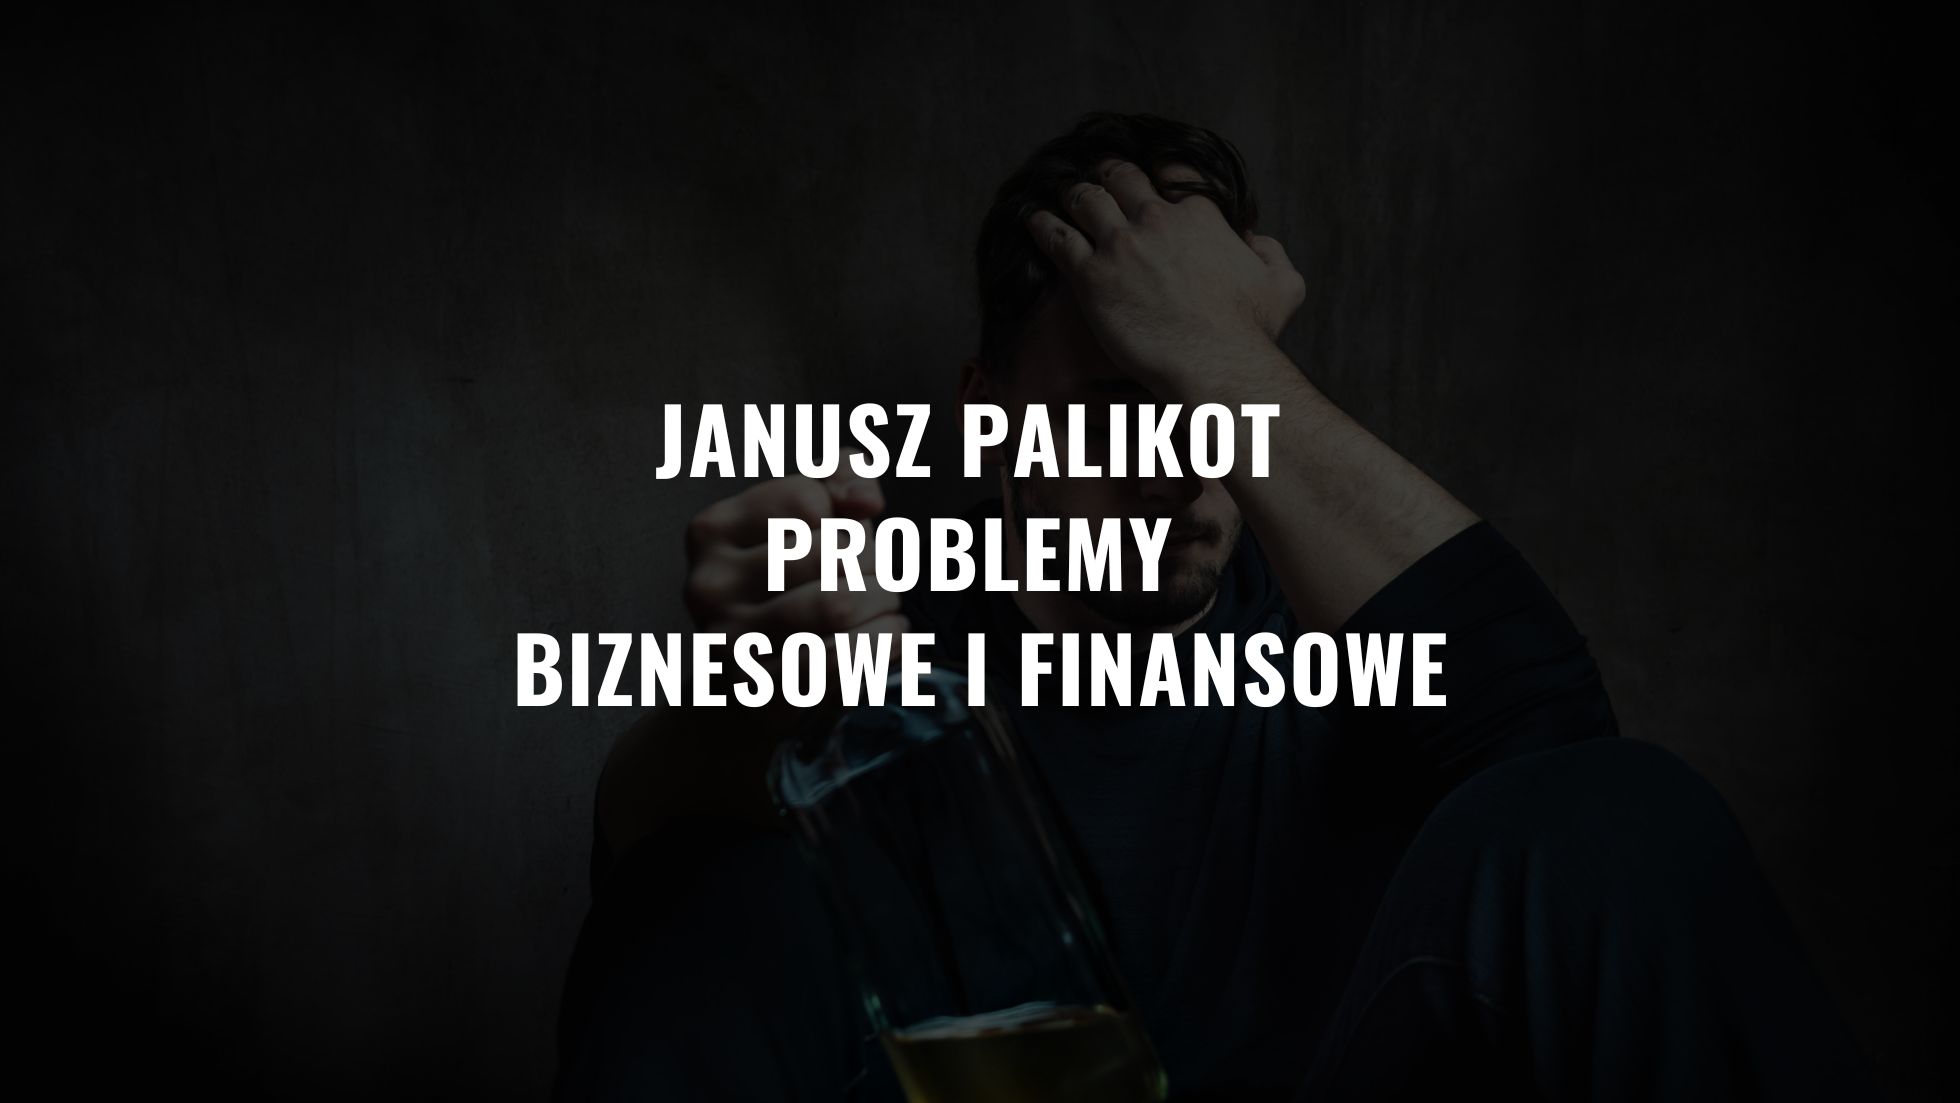 Janusz Palikot problemy biznesowe i finansowe